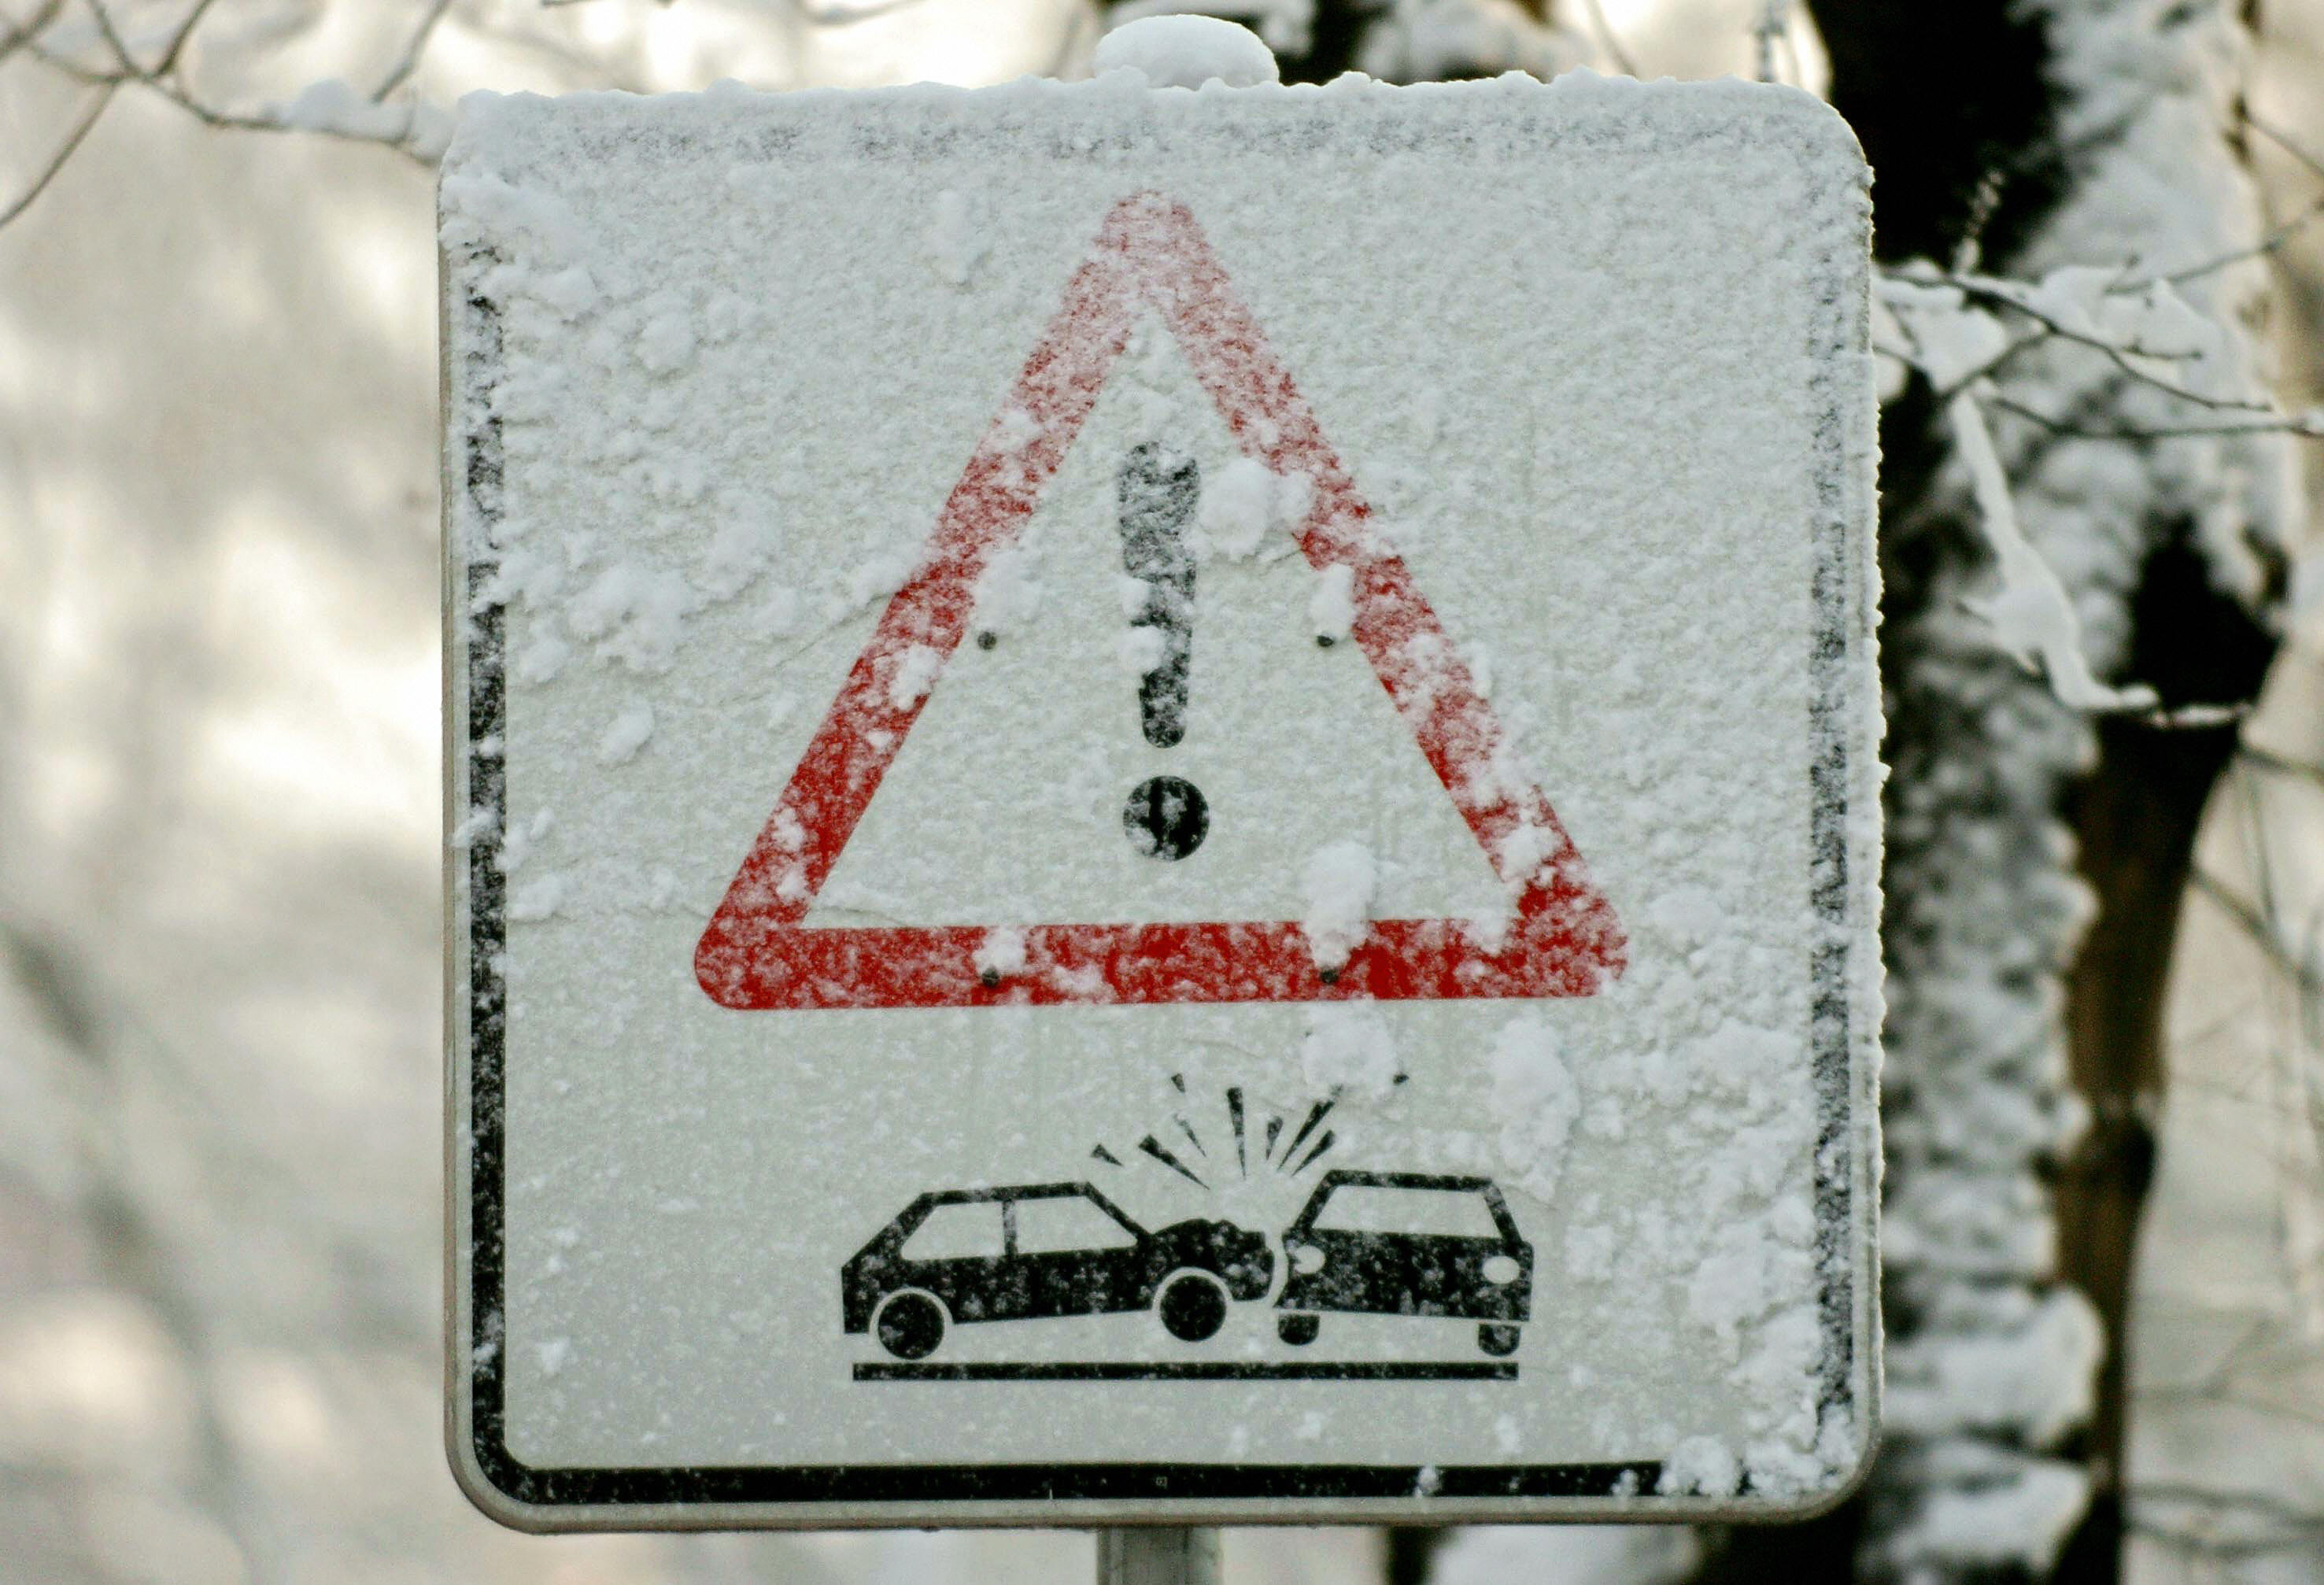 Vorsicht Glatteis! – Wetterdienst warnt vor Glatteis in Teilen der Osthälfte